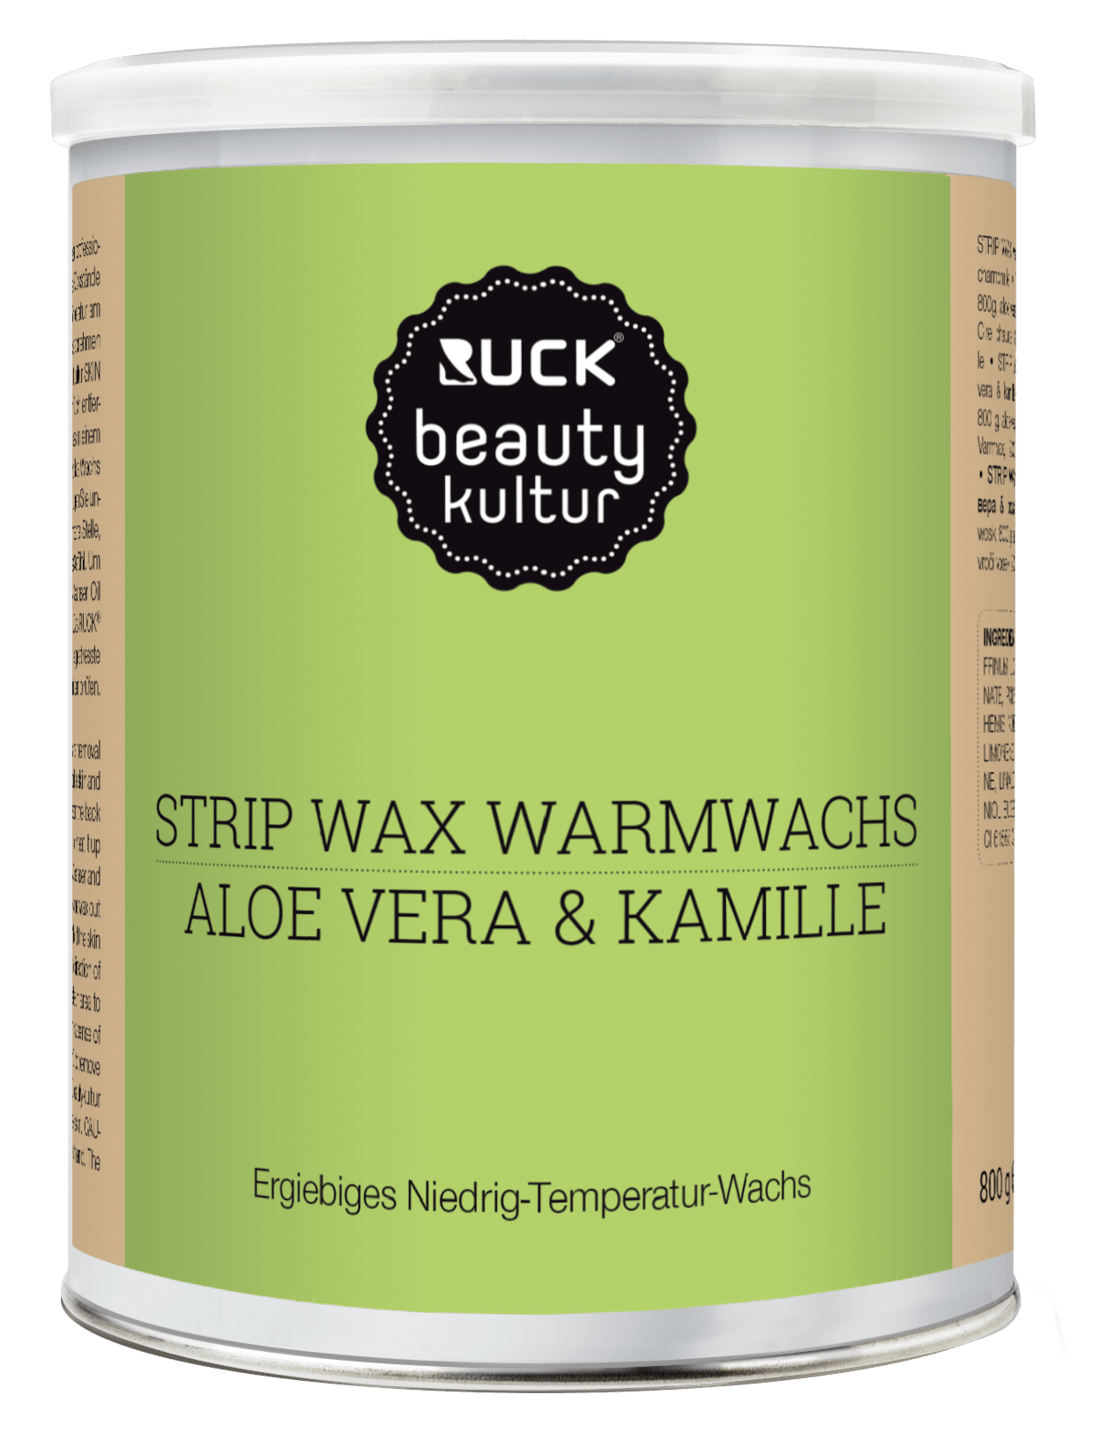 RUCK beautykultur - STRIP WAX Warmwachs, 800 g in grün